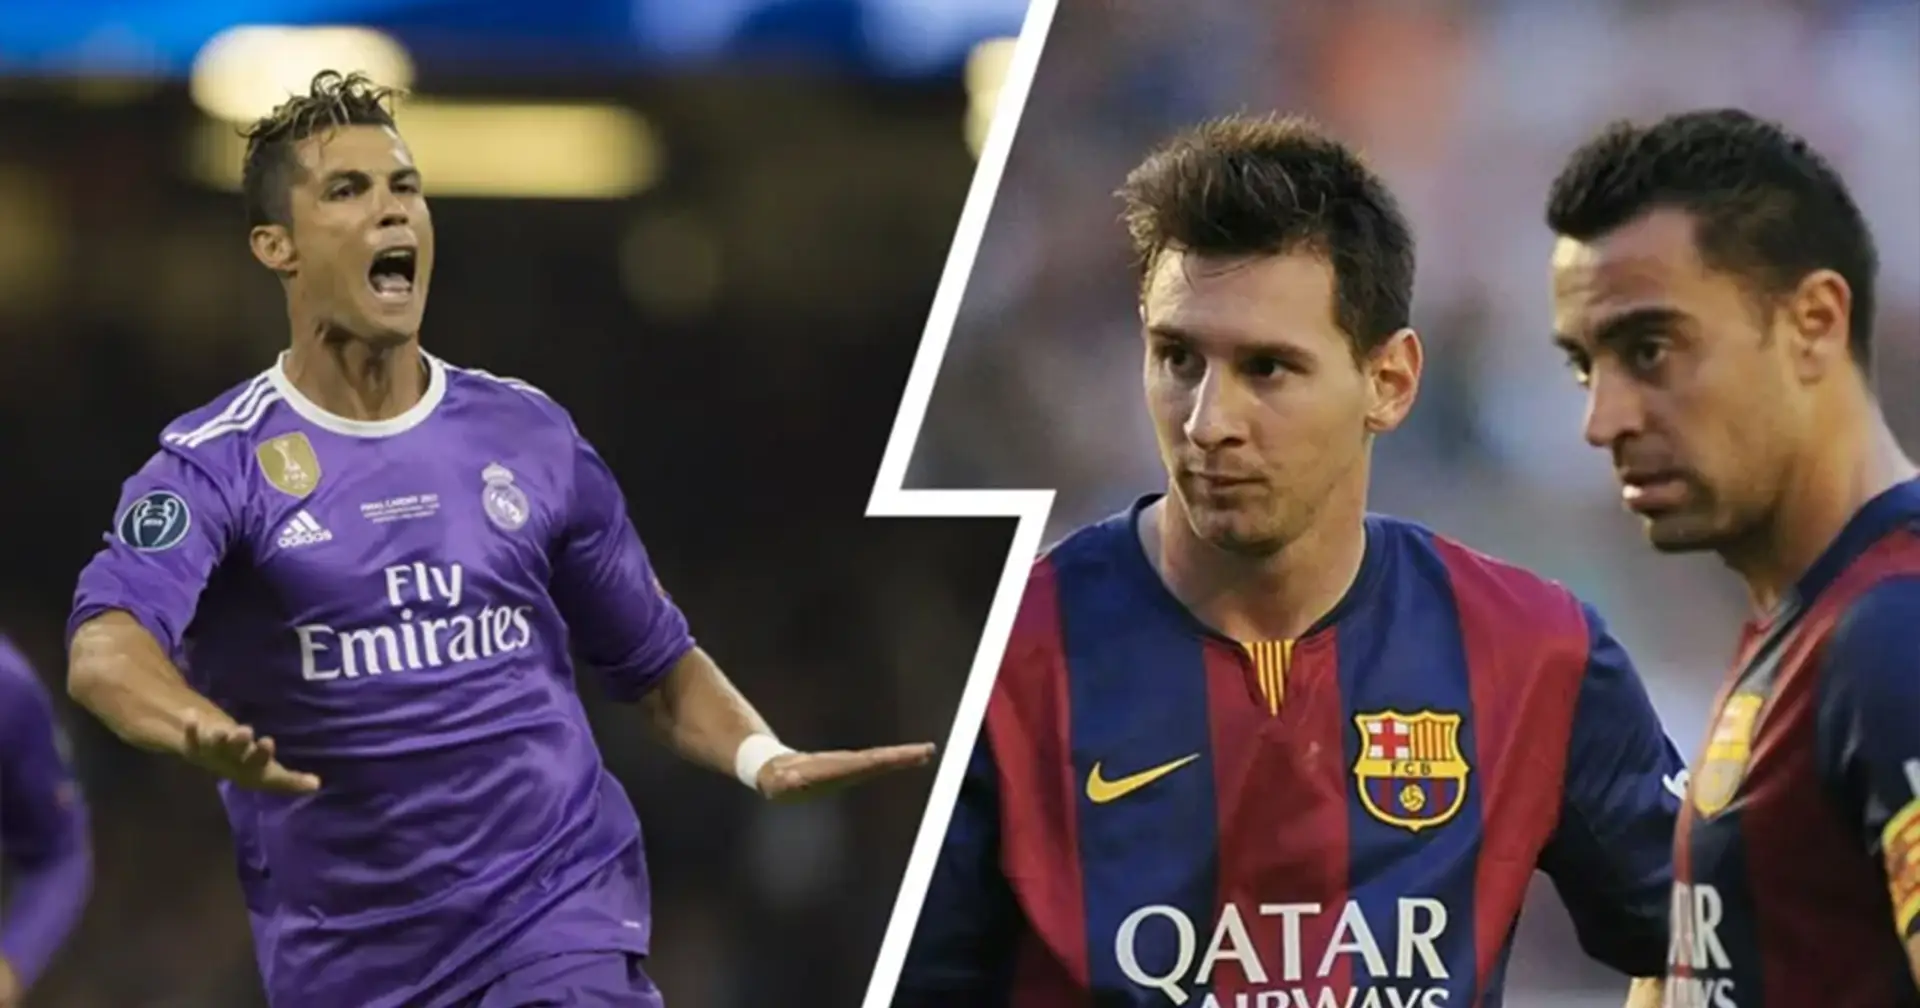 '¿Por qué es relevante? Juega en Qatar ': cómo Cristiano criticó a Xavi luego de que el catalán de su opinión sobre 'Messi vs Ronaldo'